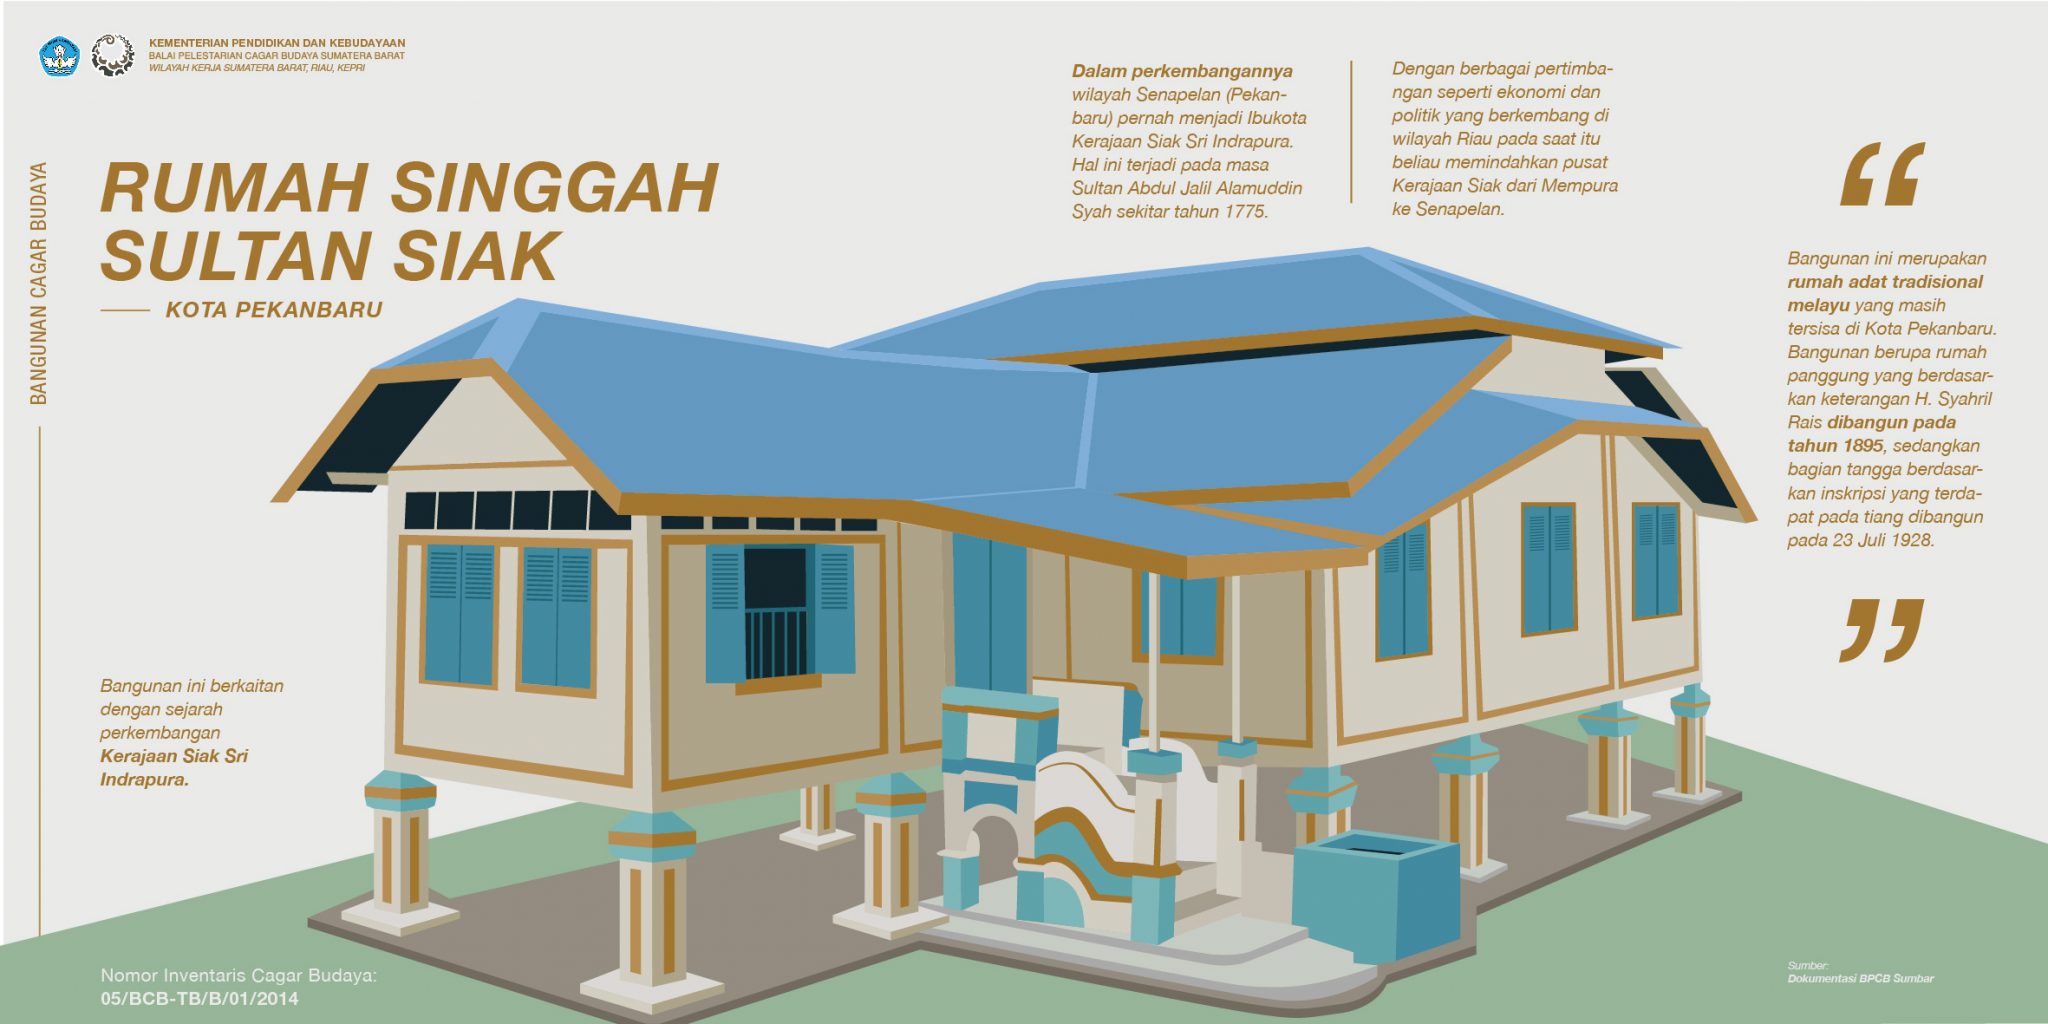 Mengenal Rumah Singgah Sultan di Pekanbaru  Balai Pelestarian Cagar Budaya Sumatera Barat